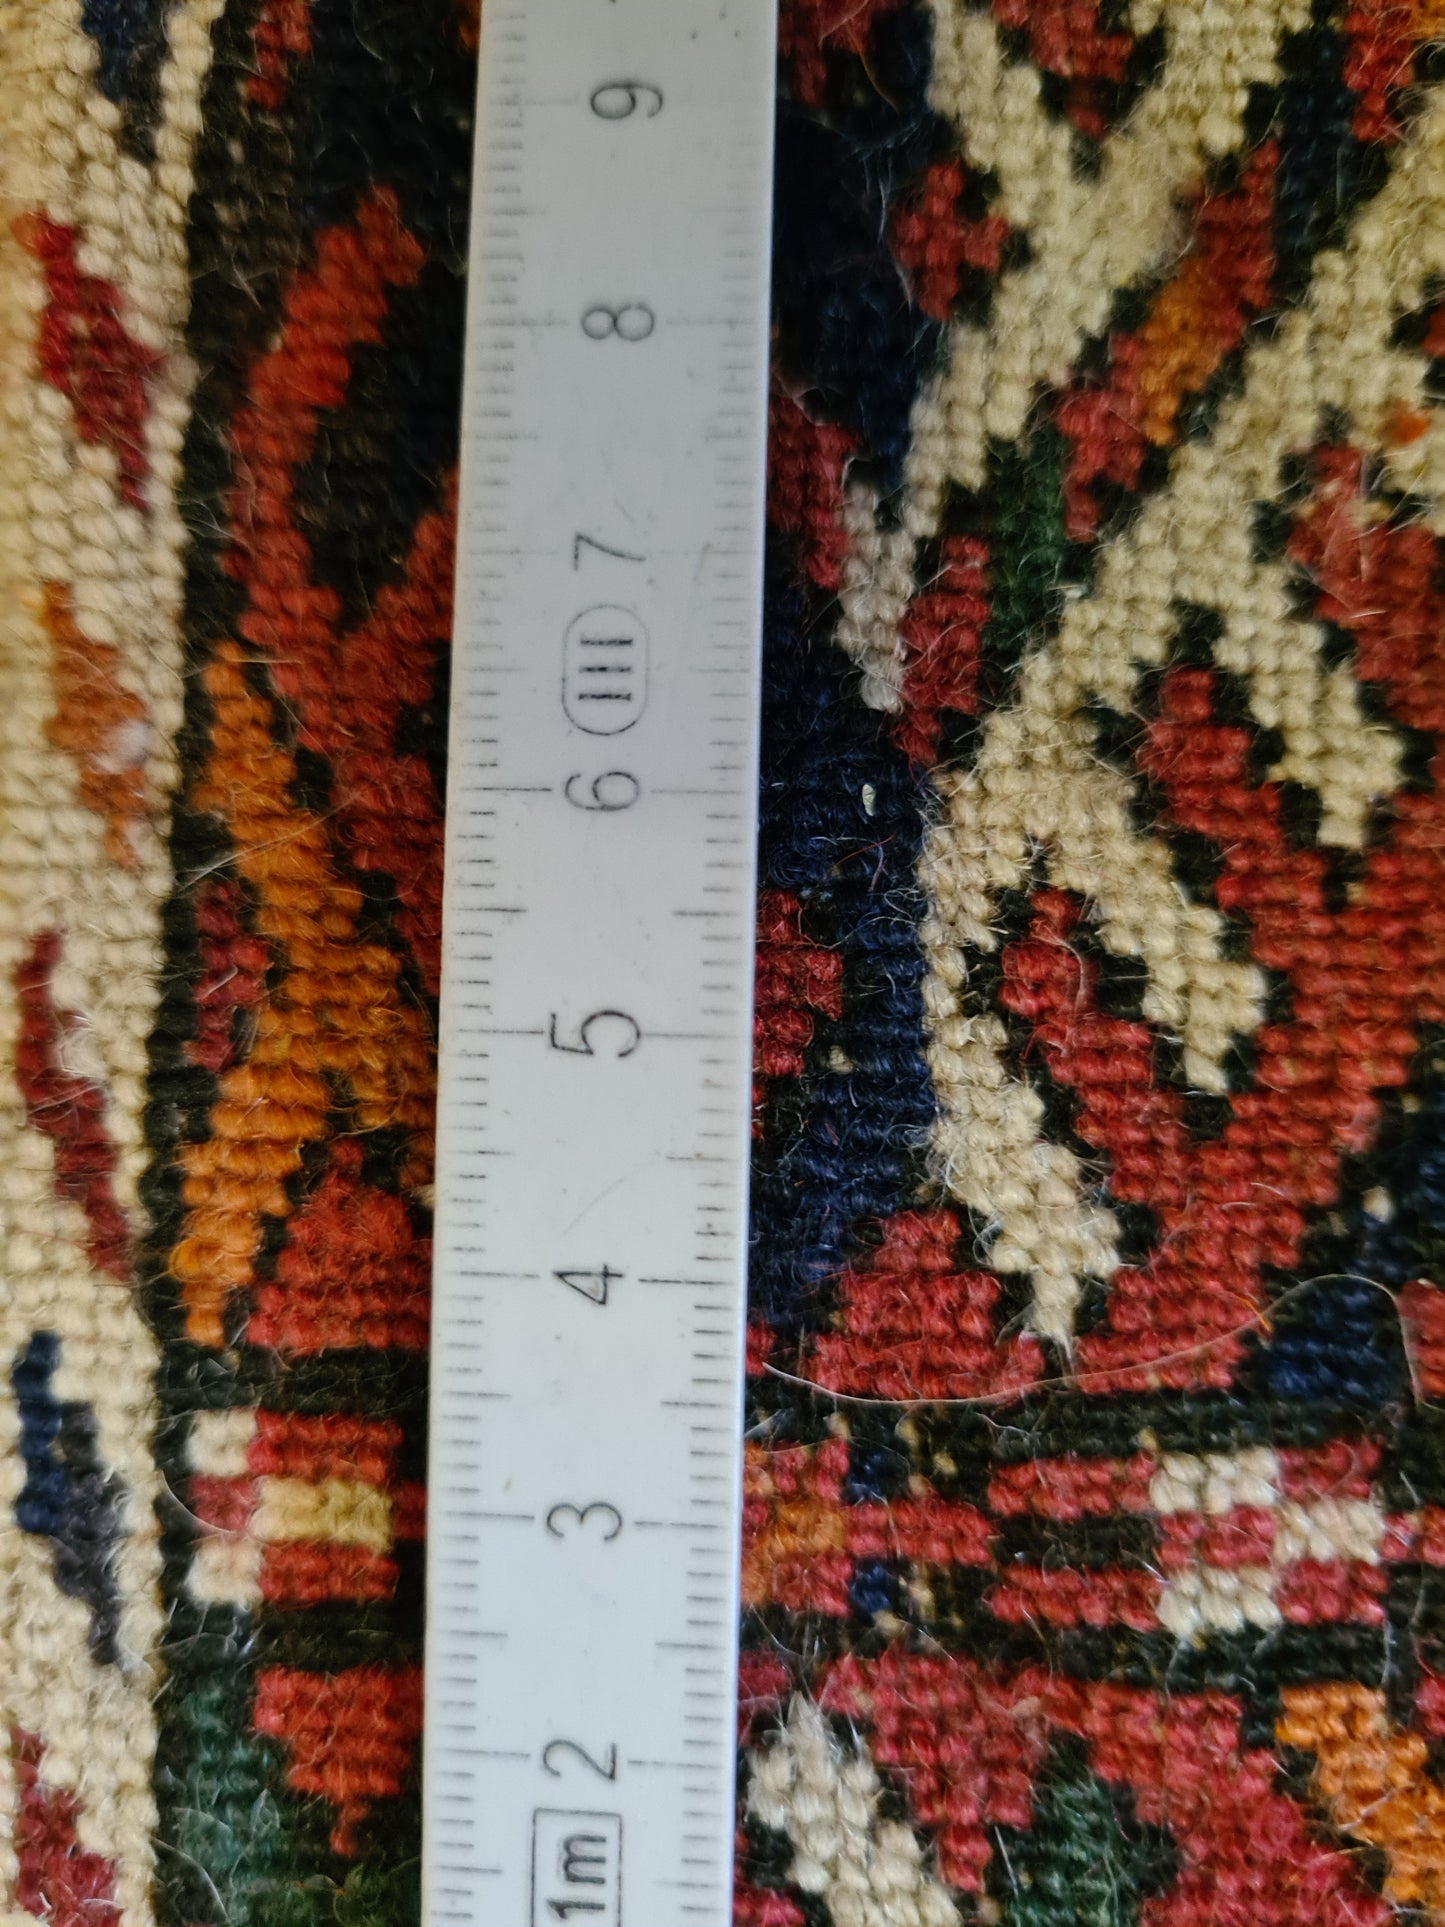 Antiker Handgeknüpfter Turkman Jomut Orientteppich Eleganz aus dem Orient 98x55cm